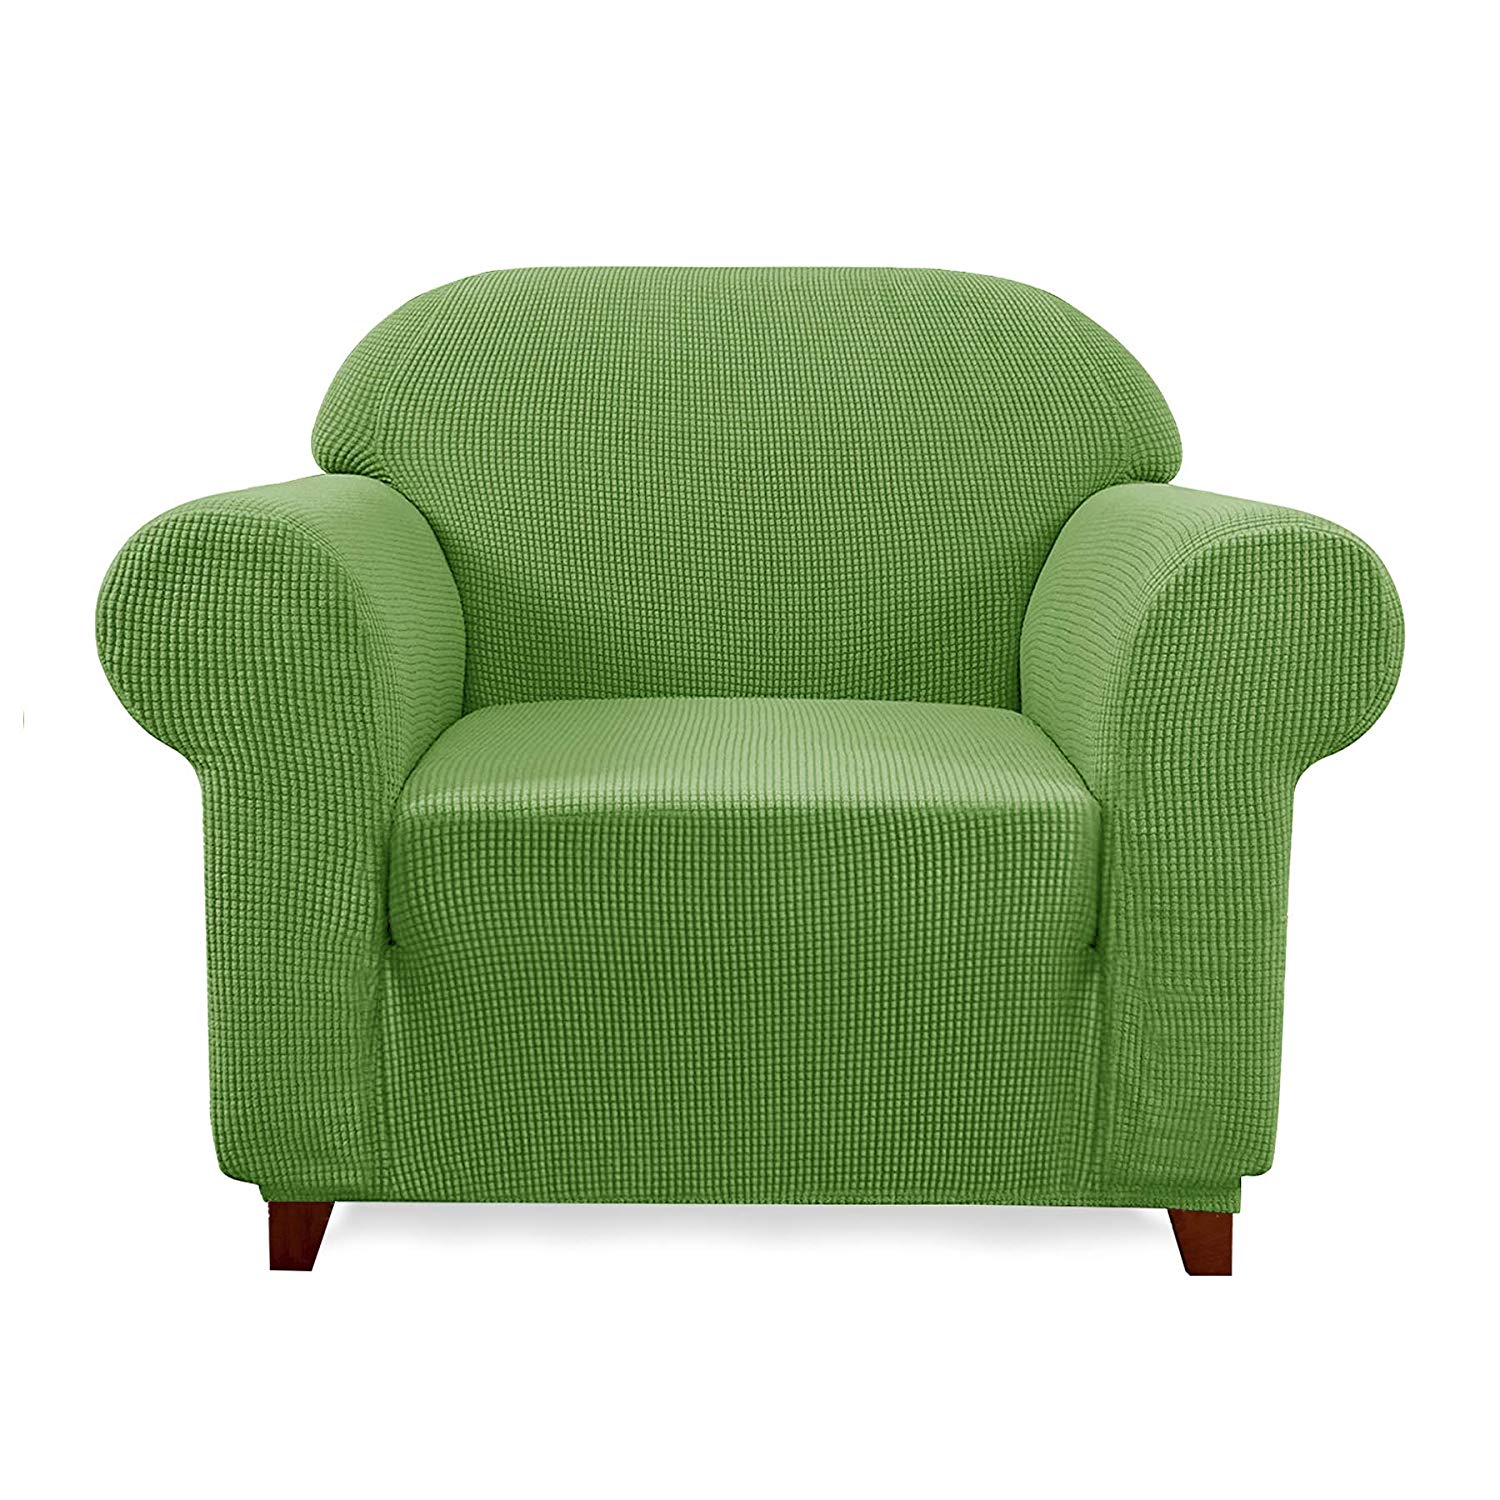 Chair / Grass Green Plaid